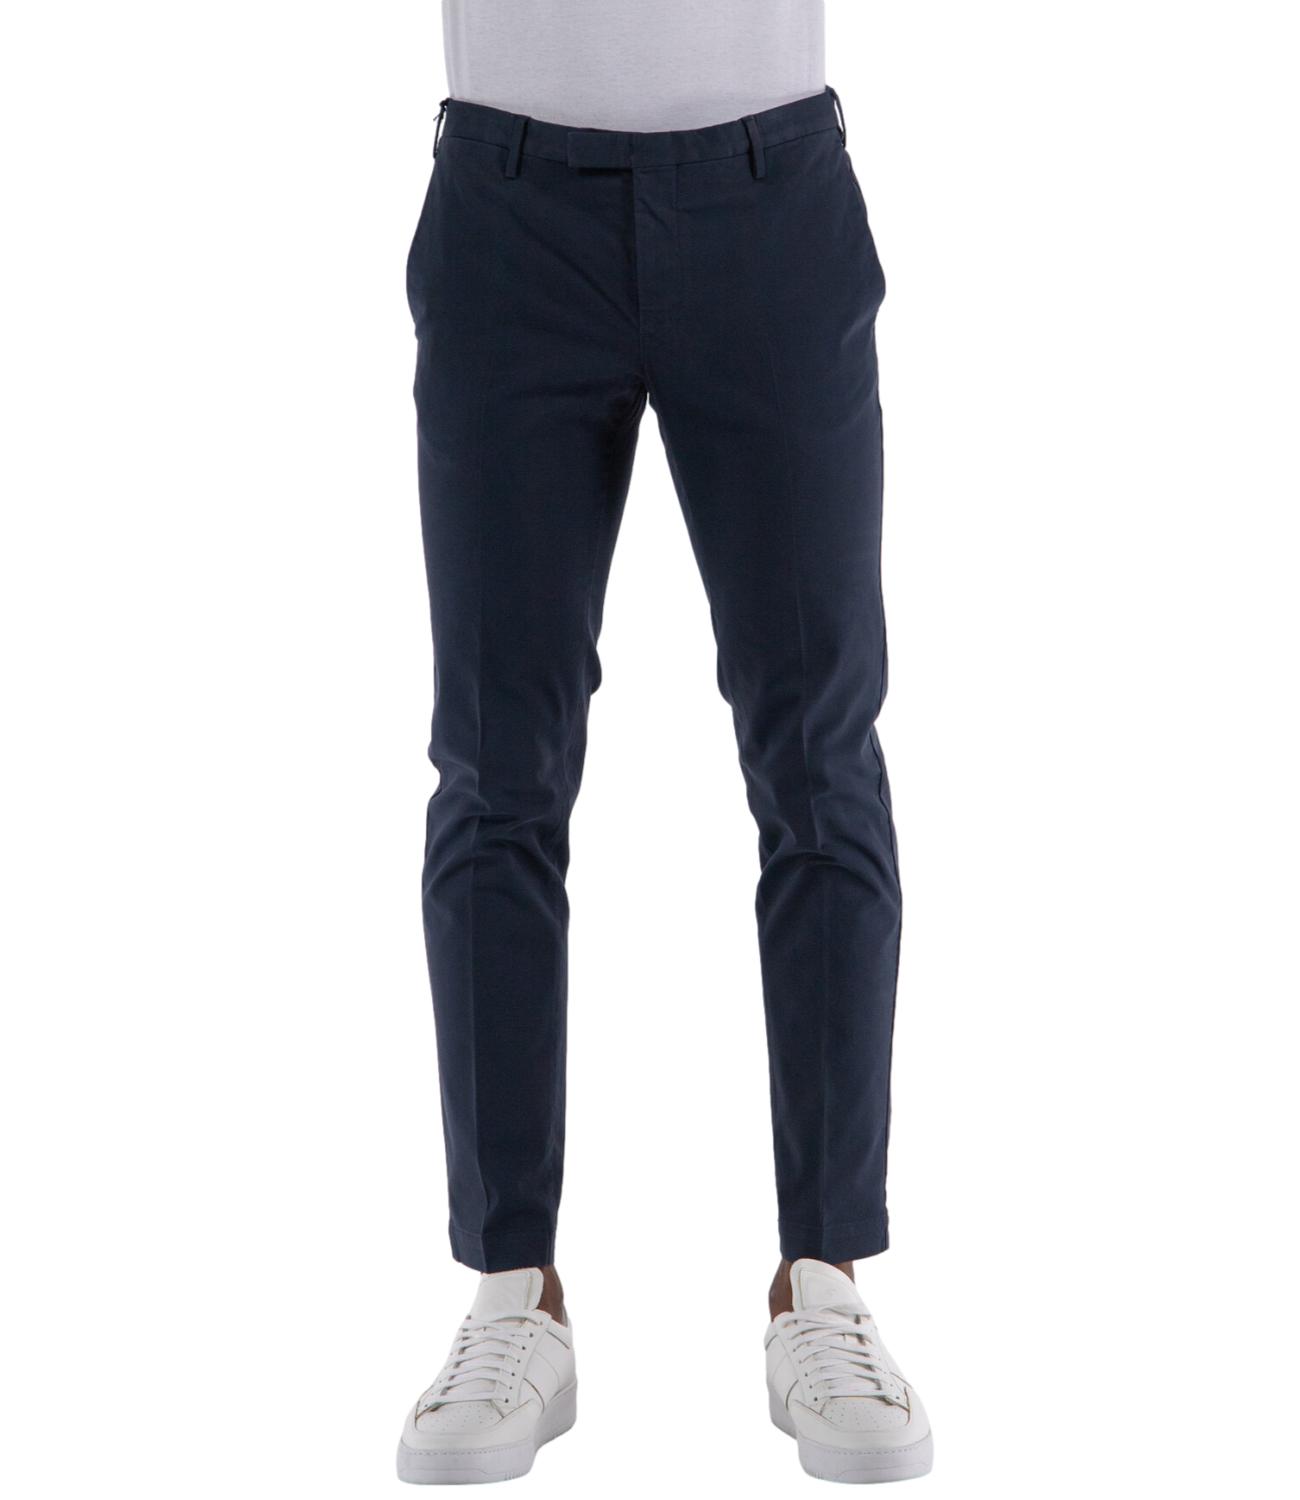 Pantalone blu skinny fit lunghezza 30 in cotone